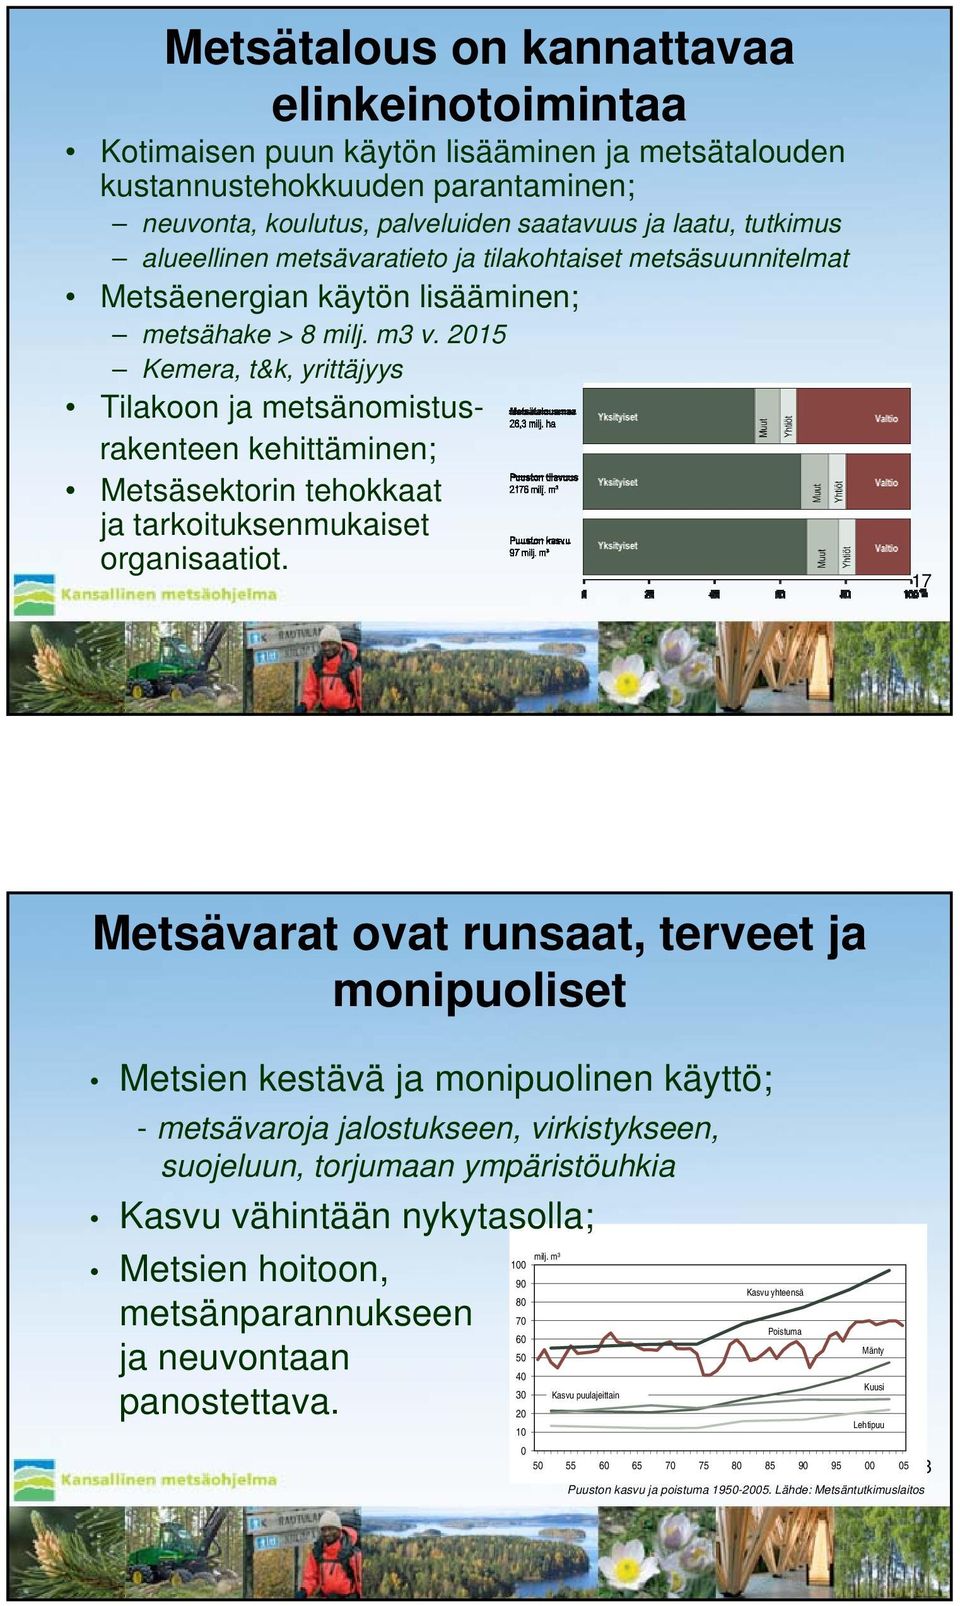 2015 Kemera, t&k, yrittäjyys Tilakoon ja metsänomistusrakenteen kehittäminen; Metsäsektorin tehokkaat ja tarkoituksenmukaiset organisaatiot.